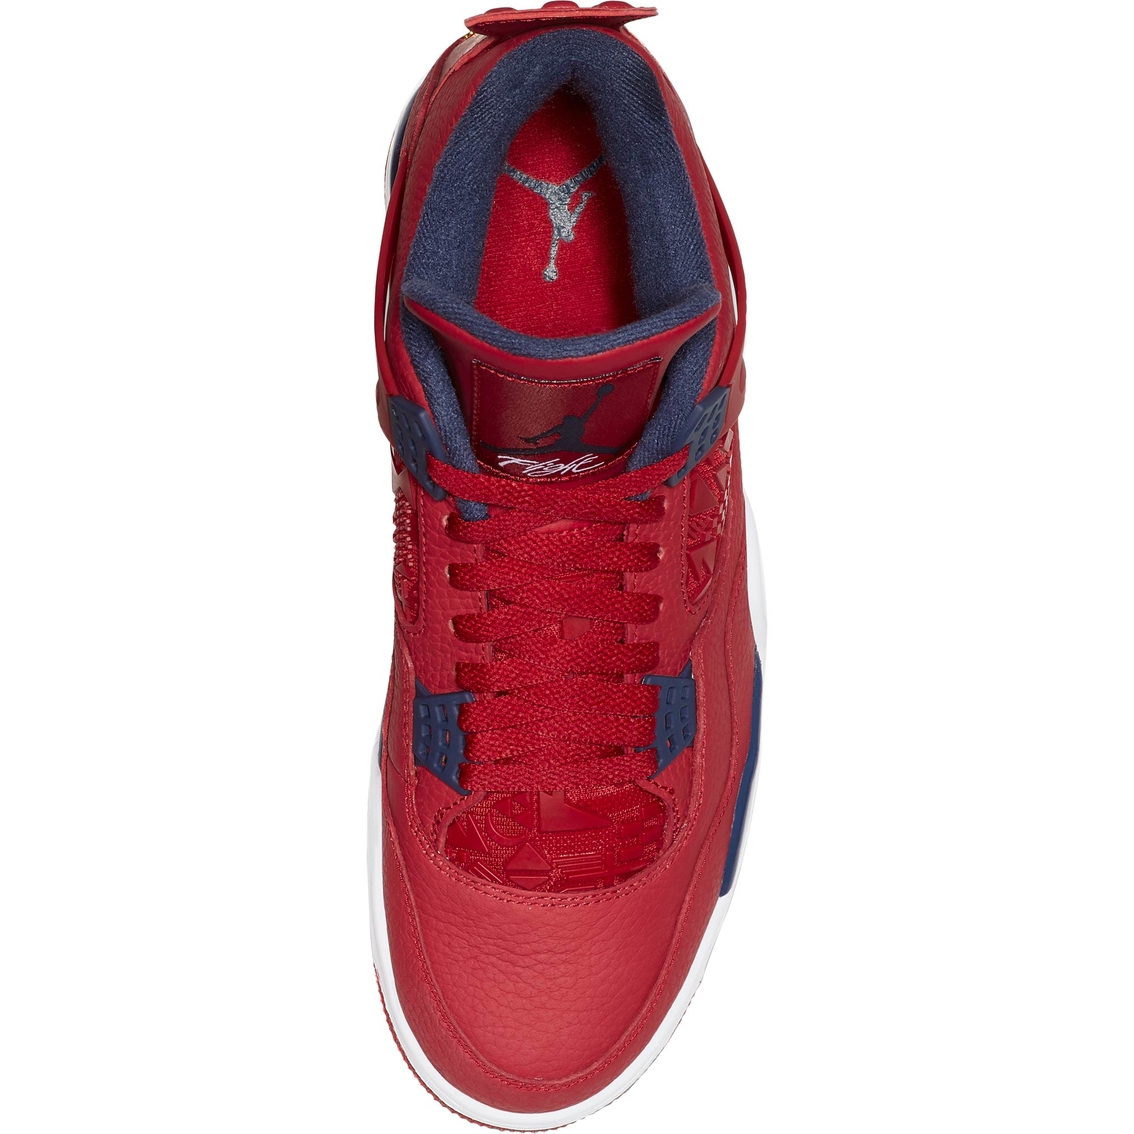 Air Jordan Men's Retro 4 Basketball Shoes - Image 4 of 7